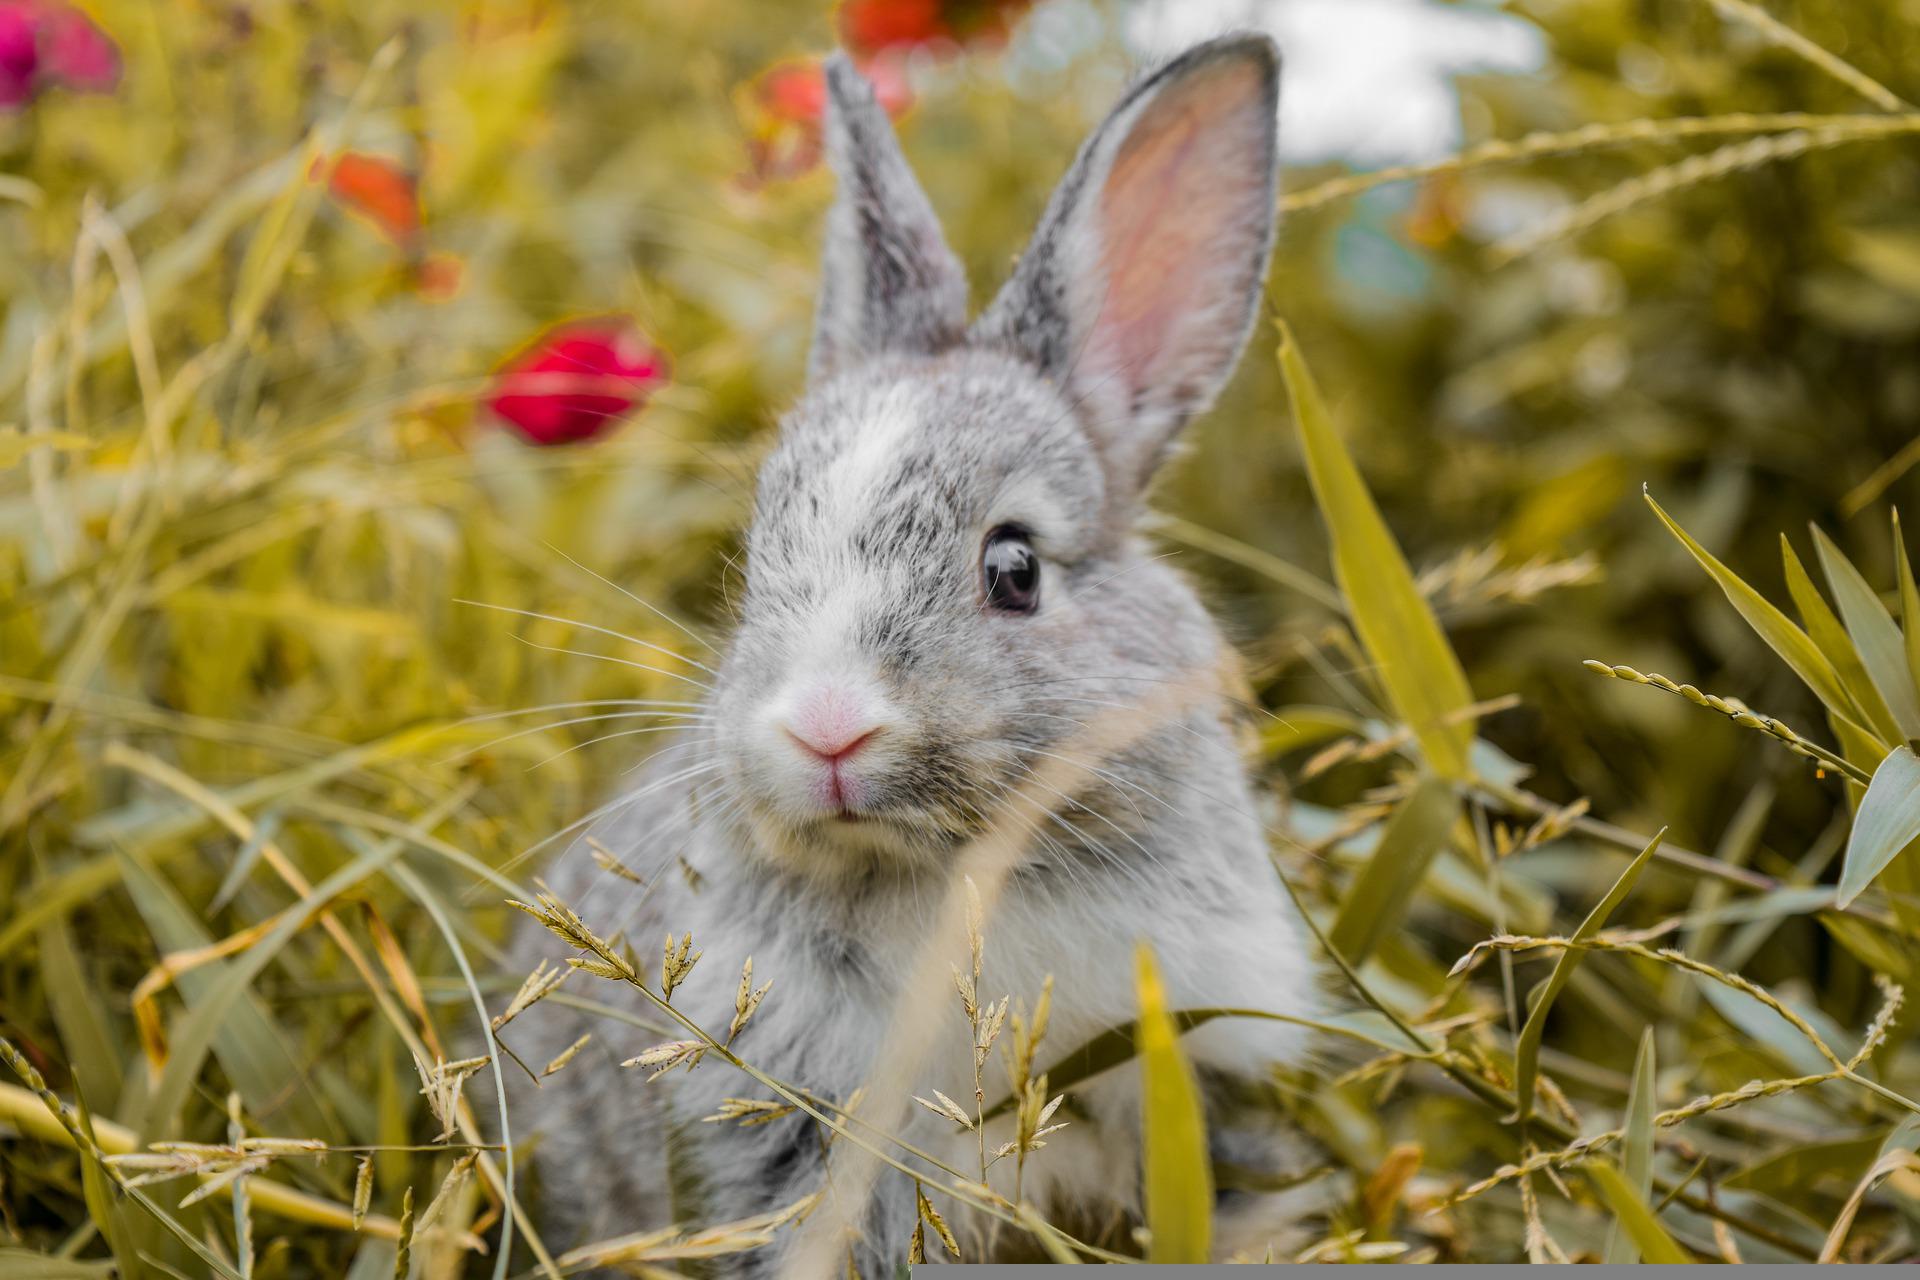 Fraise pour lapin lyophilisée - Le meilleur pour mon lapin